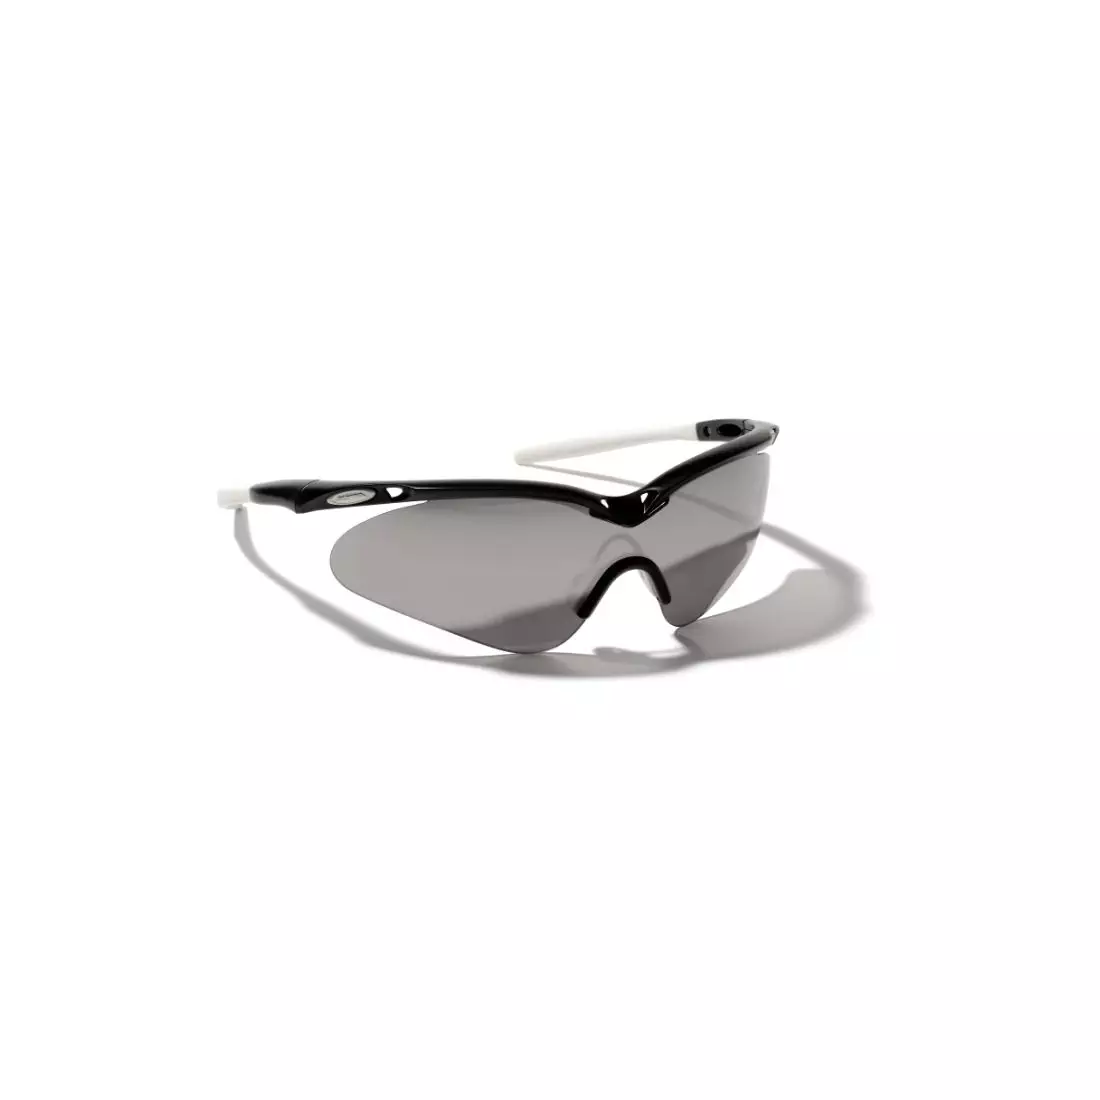 Sportovní brýle ALPINA GUARD-SHIELD - barva: Černobílá